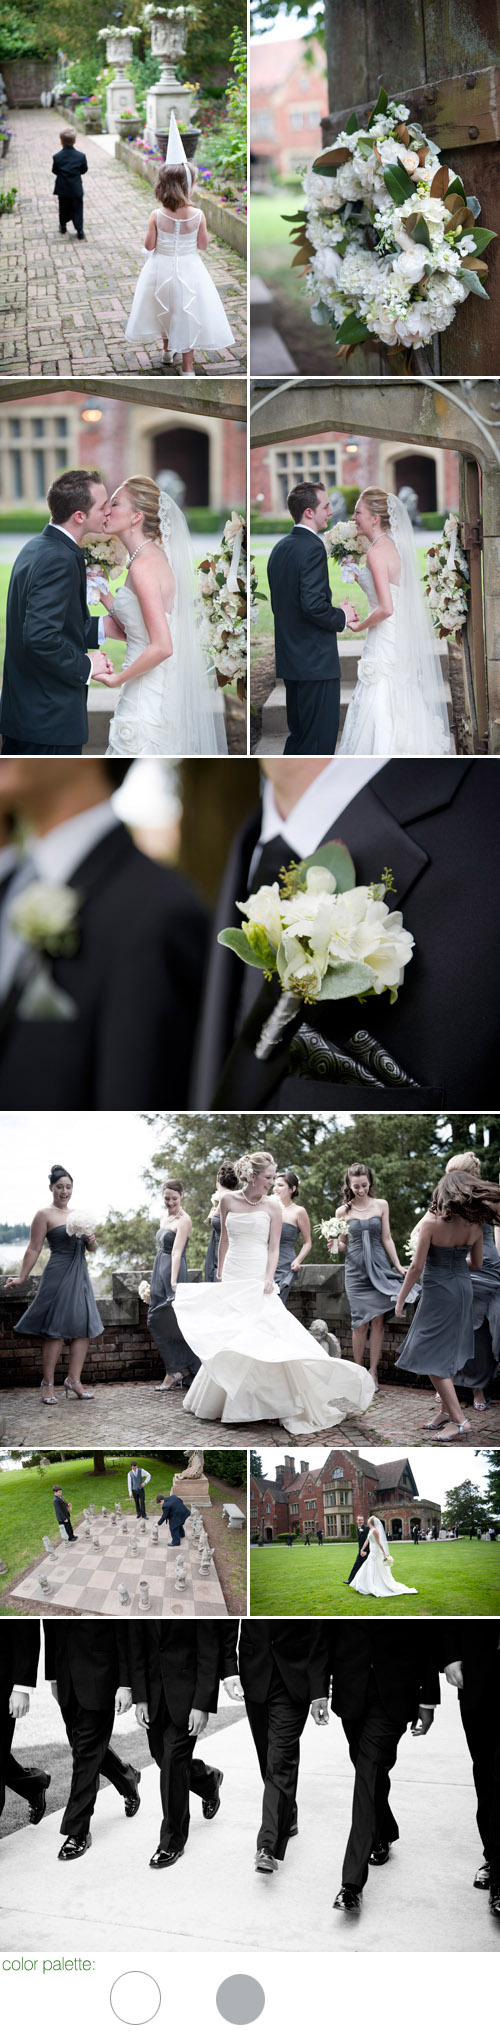 Elegant wedding at Thornwood Castle in Lakewood, Washington, photos by Yitzhak Dalal Photography